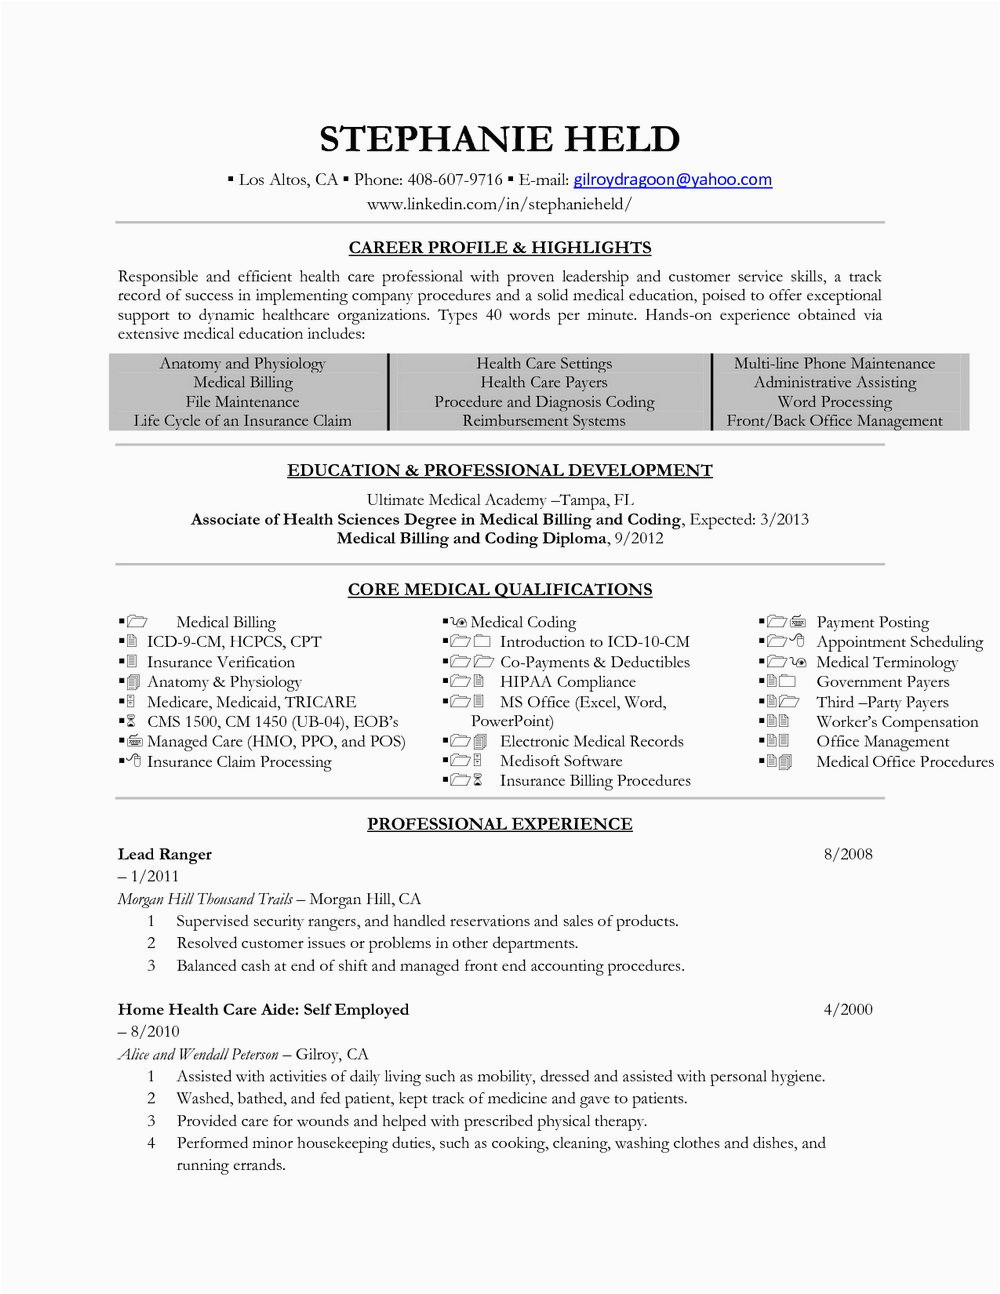 Sample Resume for Entry Level Medical Billing and Coding Resume for Medical Billing and Coding Specialist